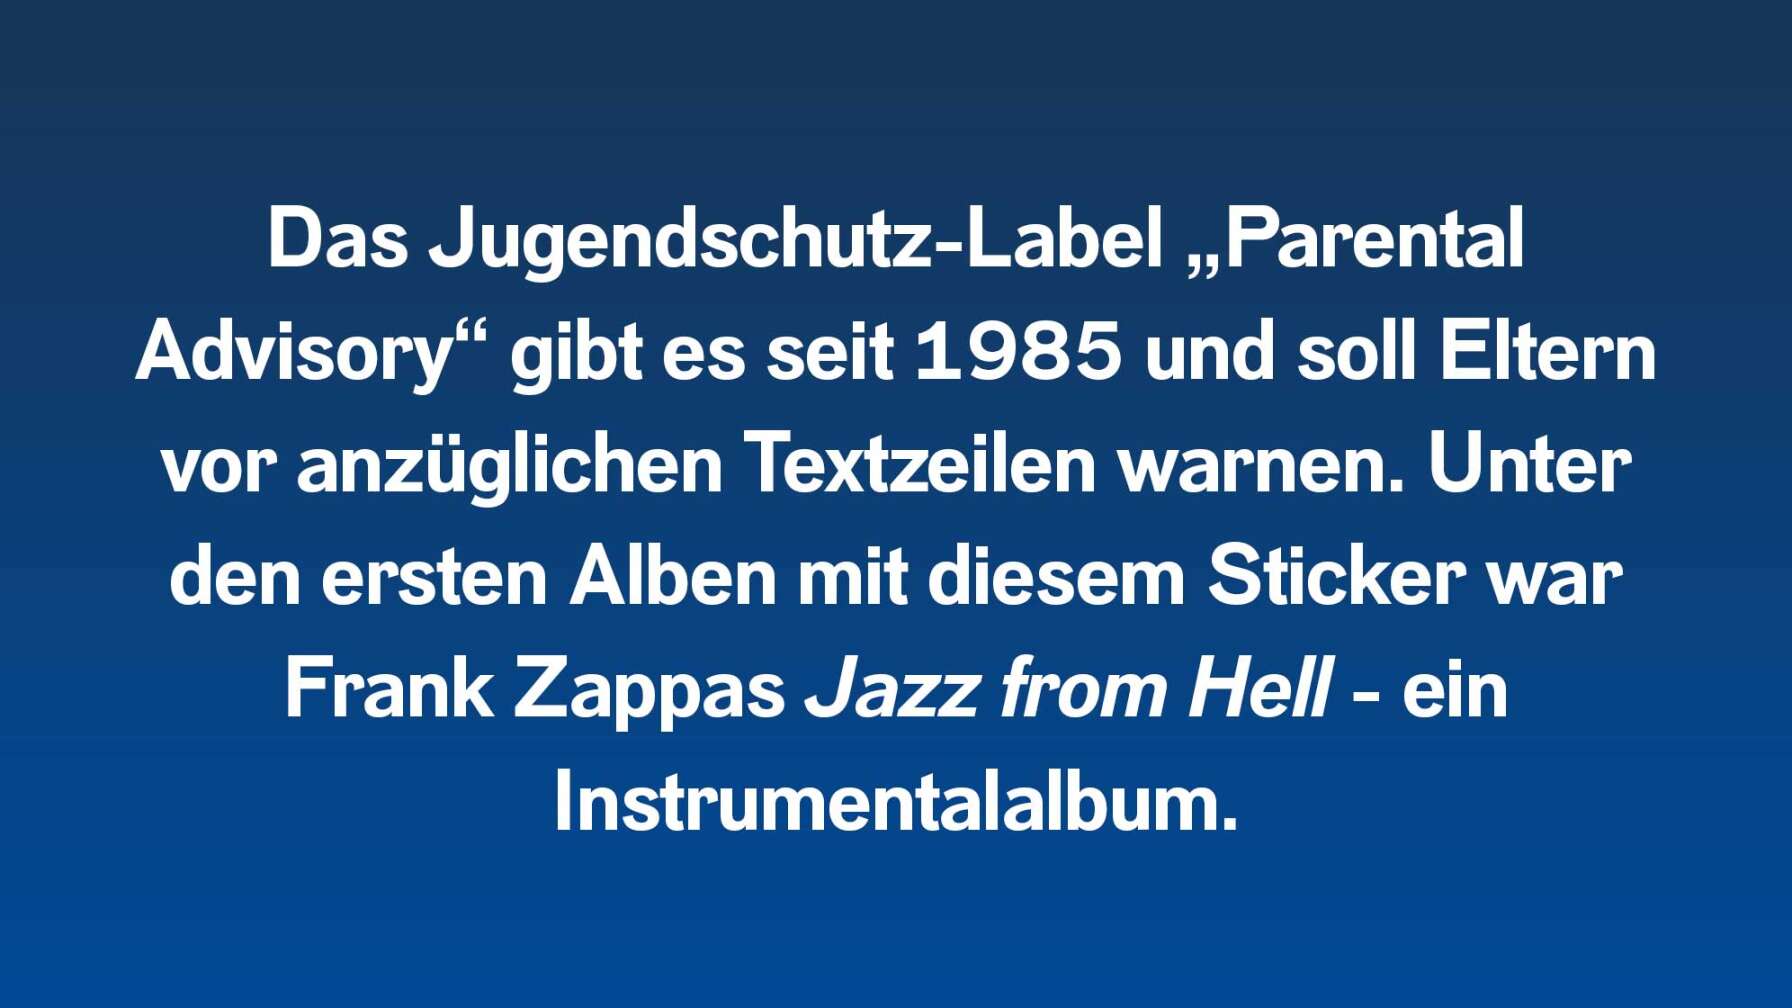 Das Jugendschutz-Label „Parental Advisory“ gibt es seit 1985 und soll Eltern vor anzüglichen Textzeilen warnen. Unter den ersten Alben mit diesem Sticker war Frank Zappas Jazz from Hell - ein Instrumentalalbum.